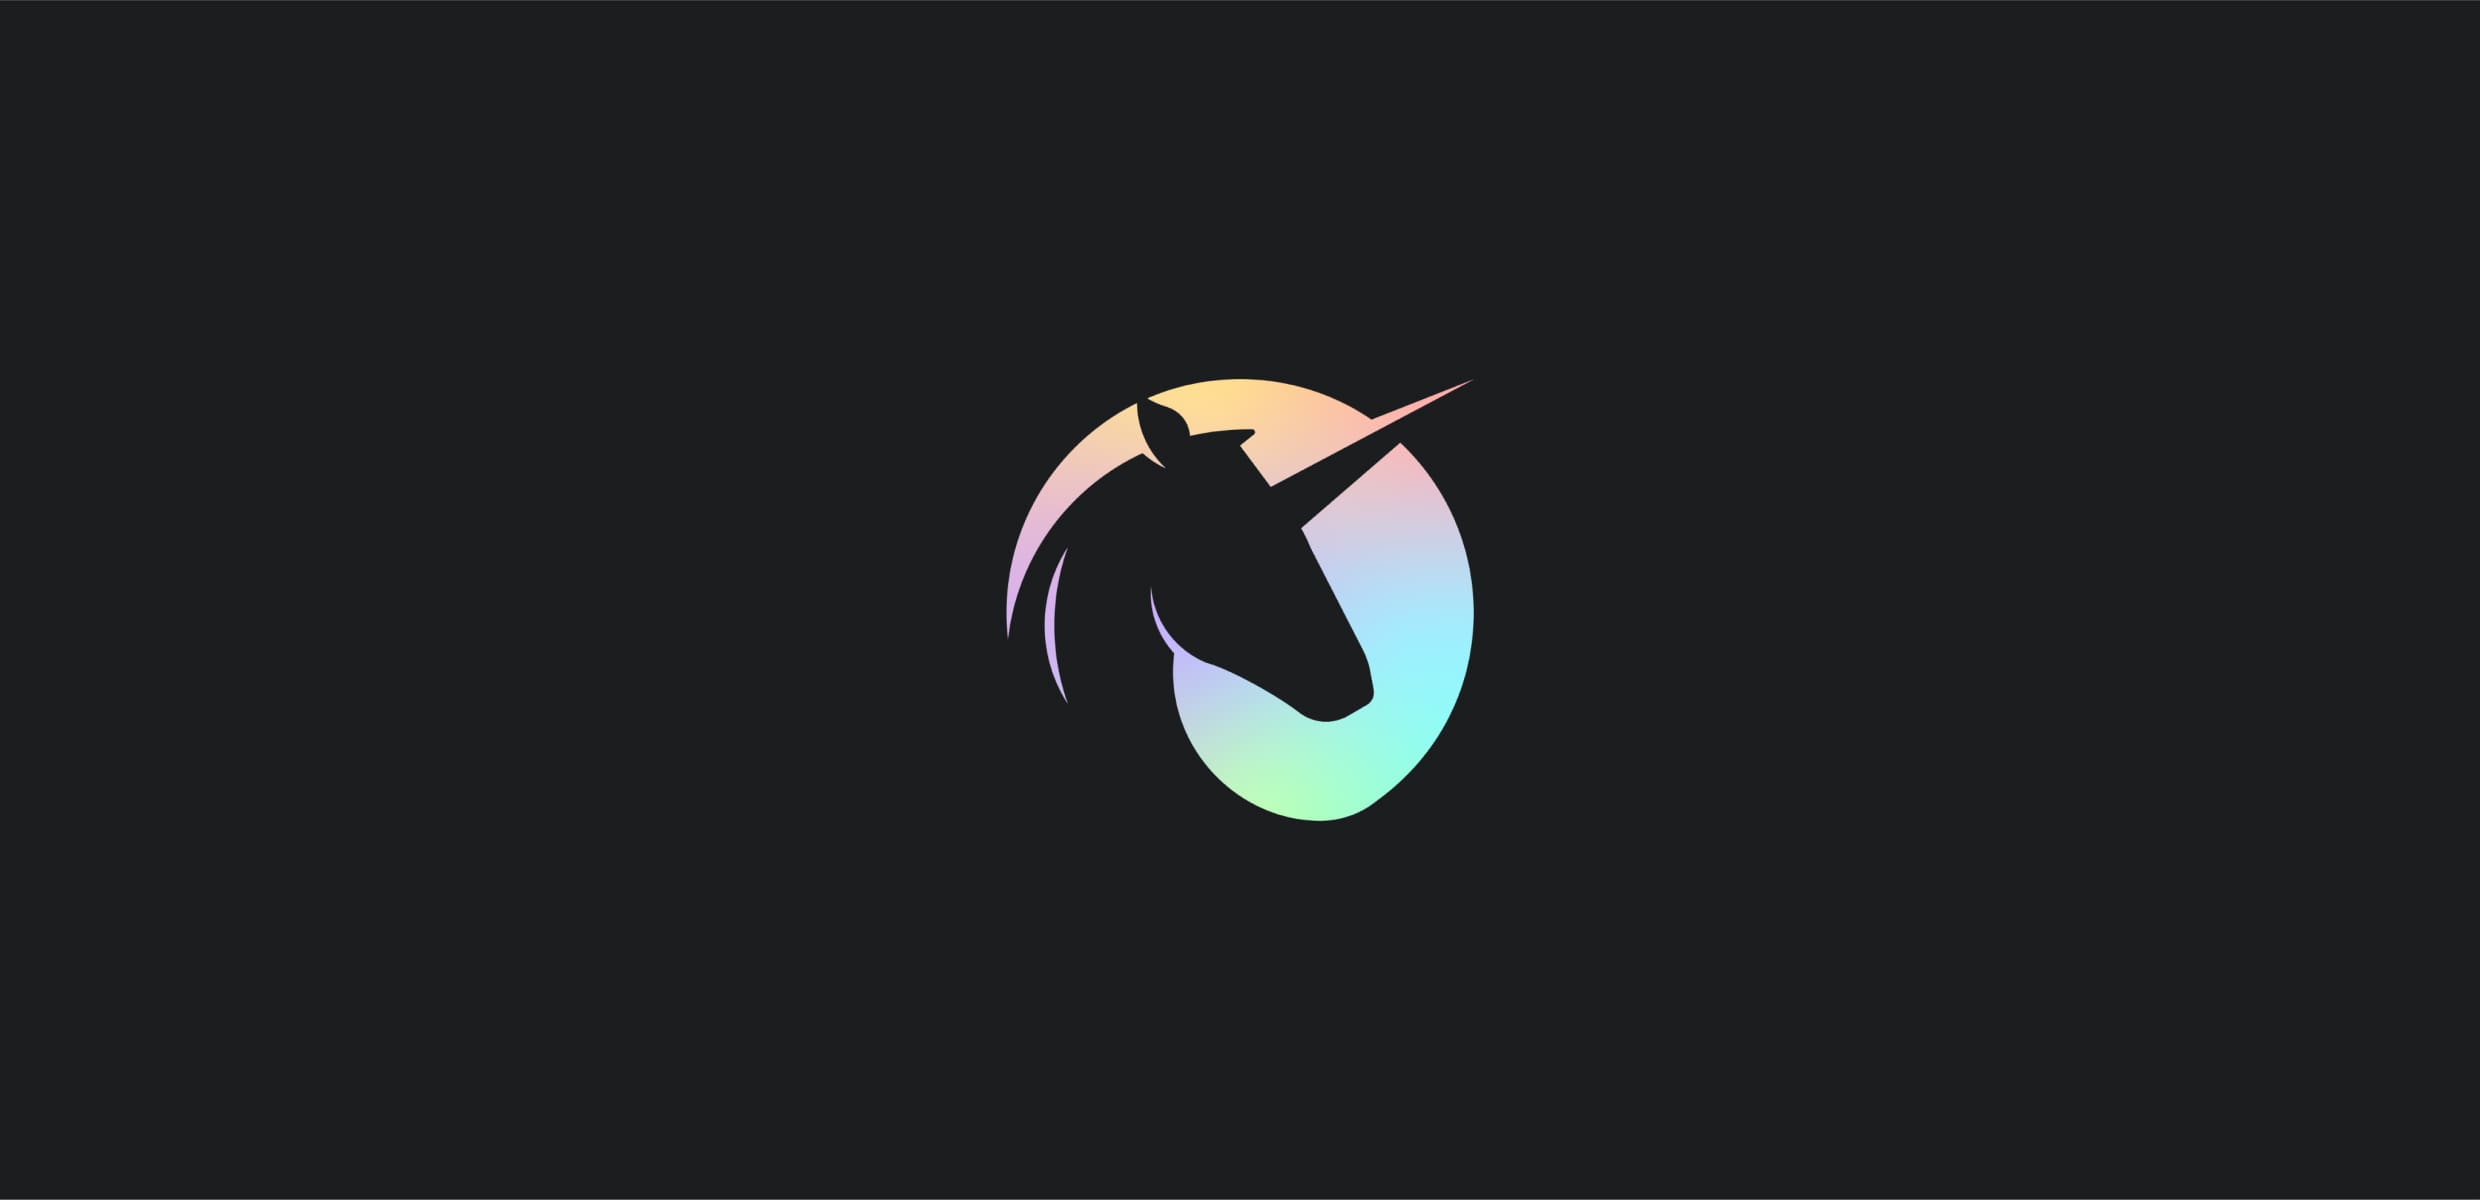 Black Unicorn Logo